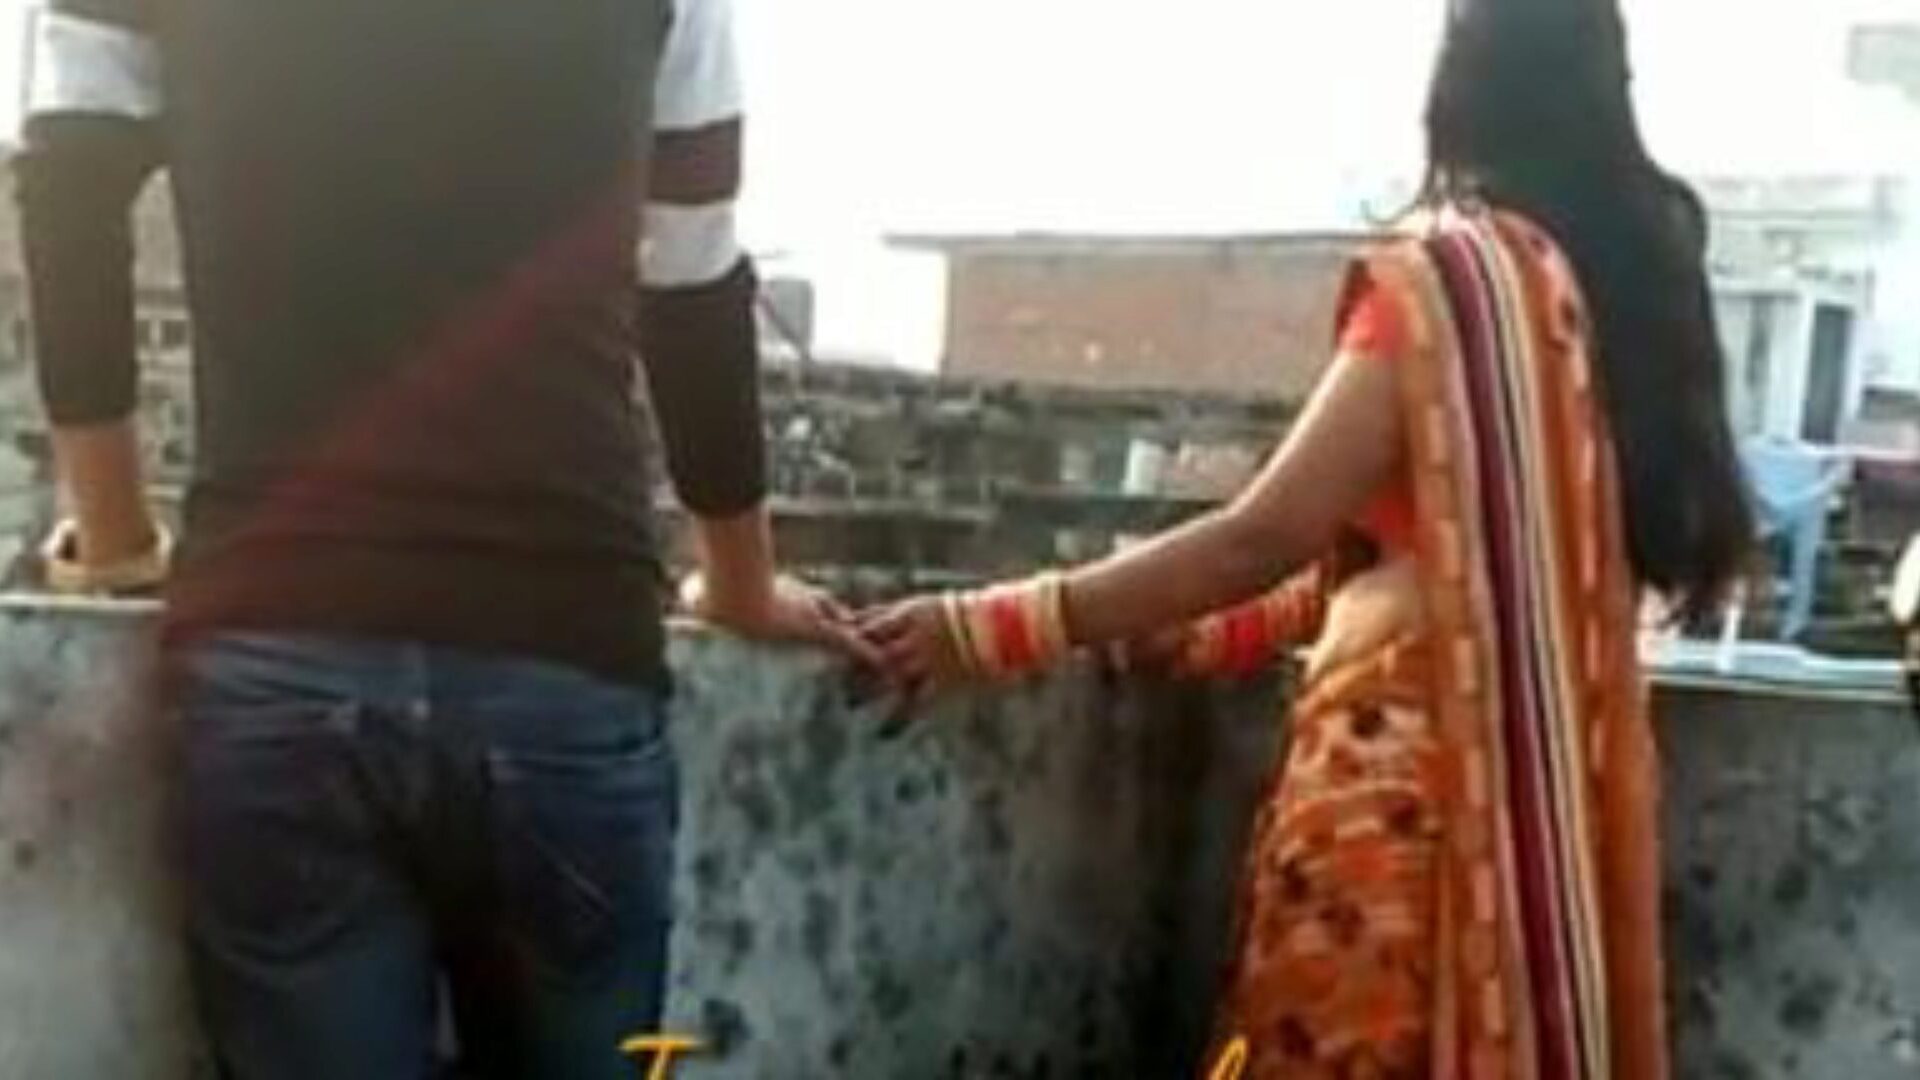 vidéo maison indienne baise la femme d'un ami: porno gratuit fd regarder une vidéo maison indienne baise la femme d'un ami film sur xhamster - la base de données ultime de vidéos pornographiques gratuites pour tous